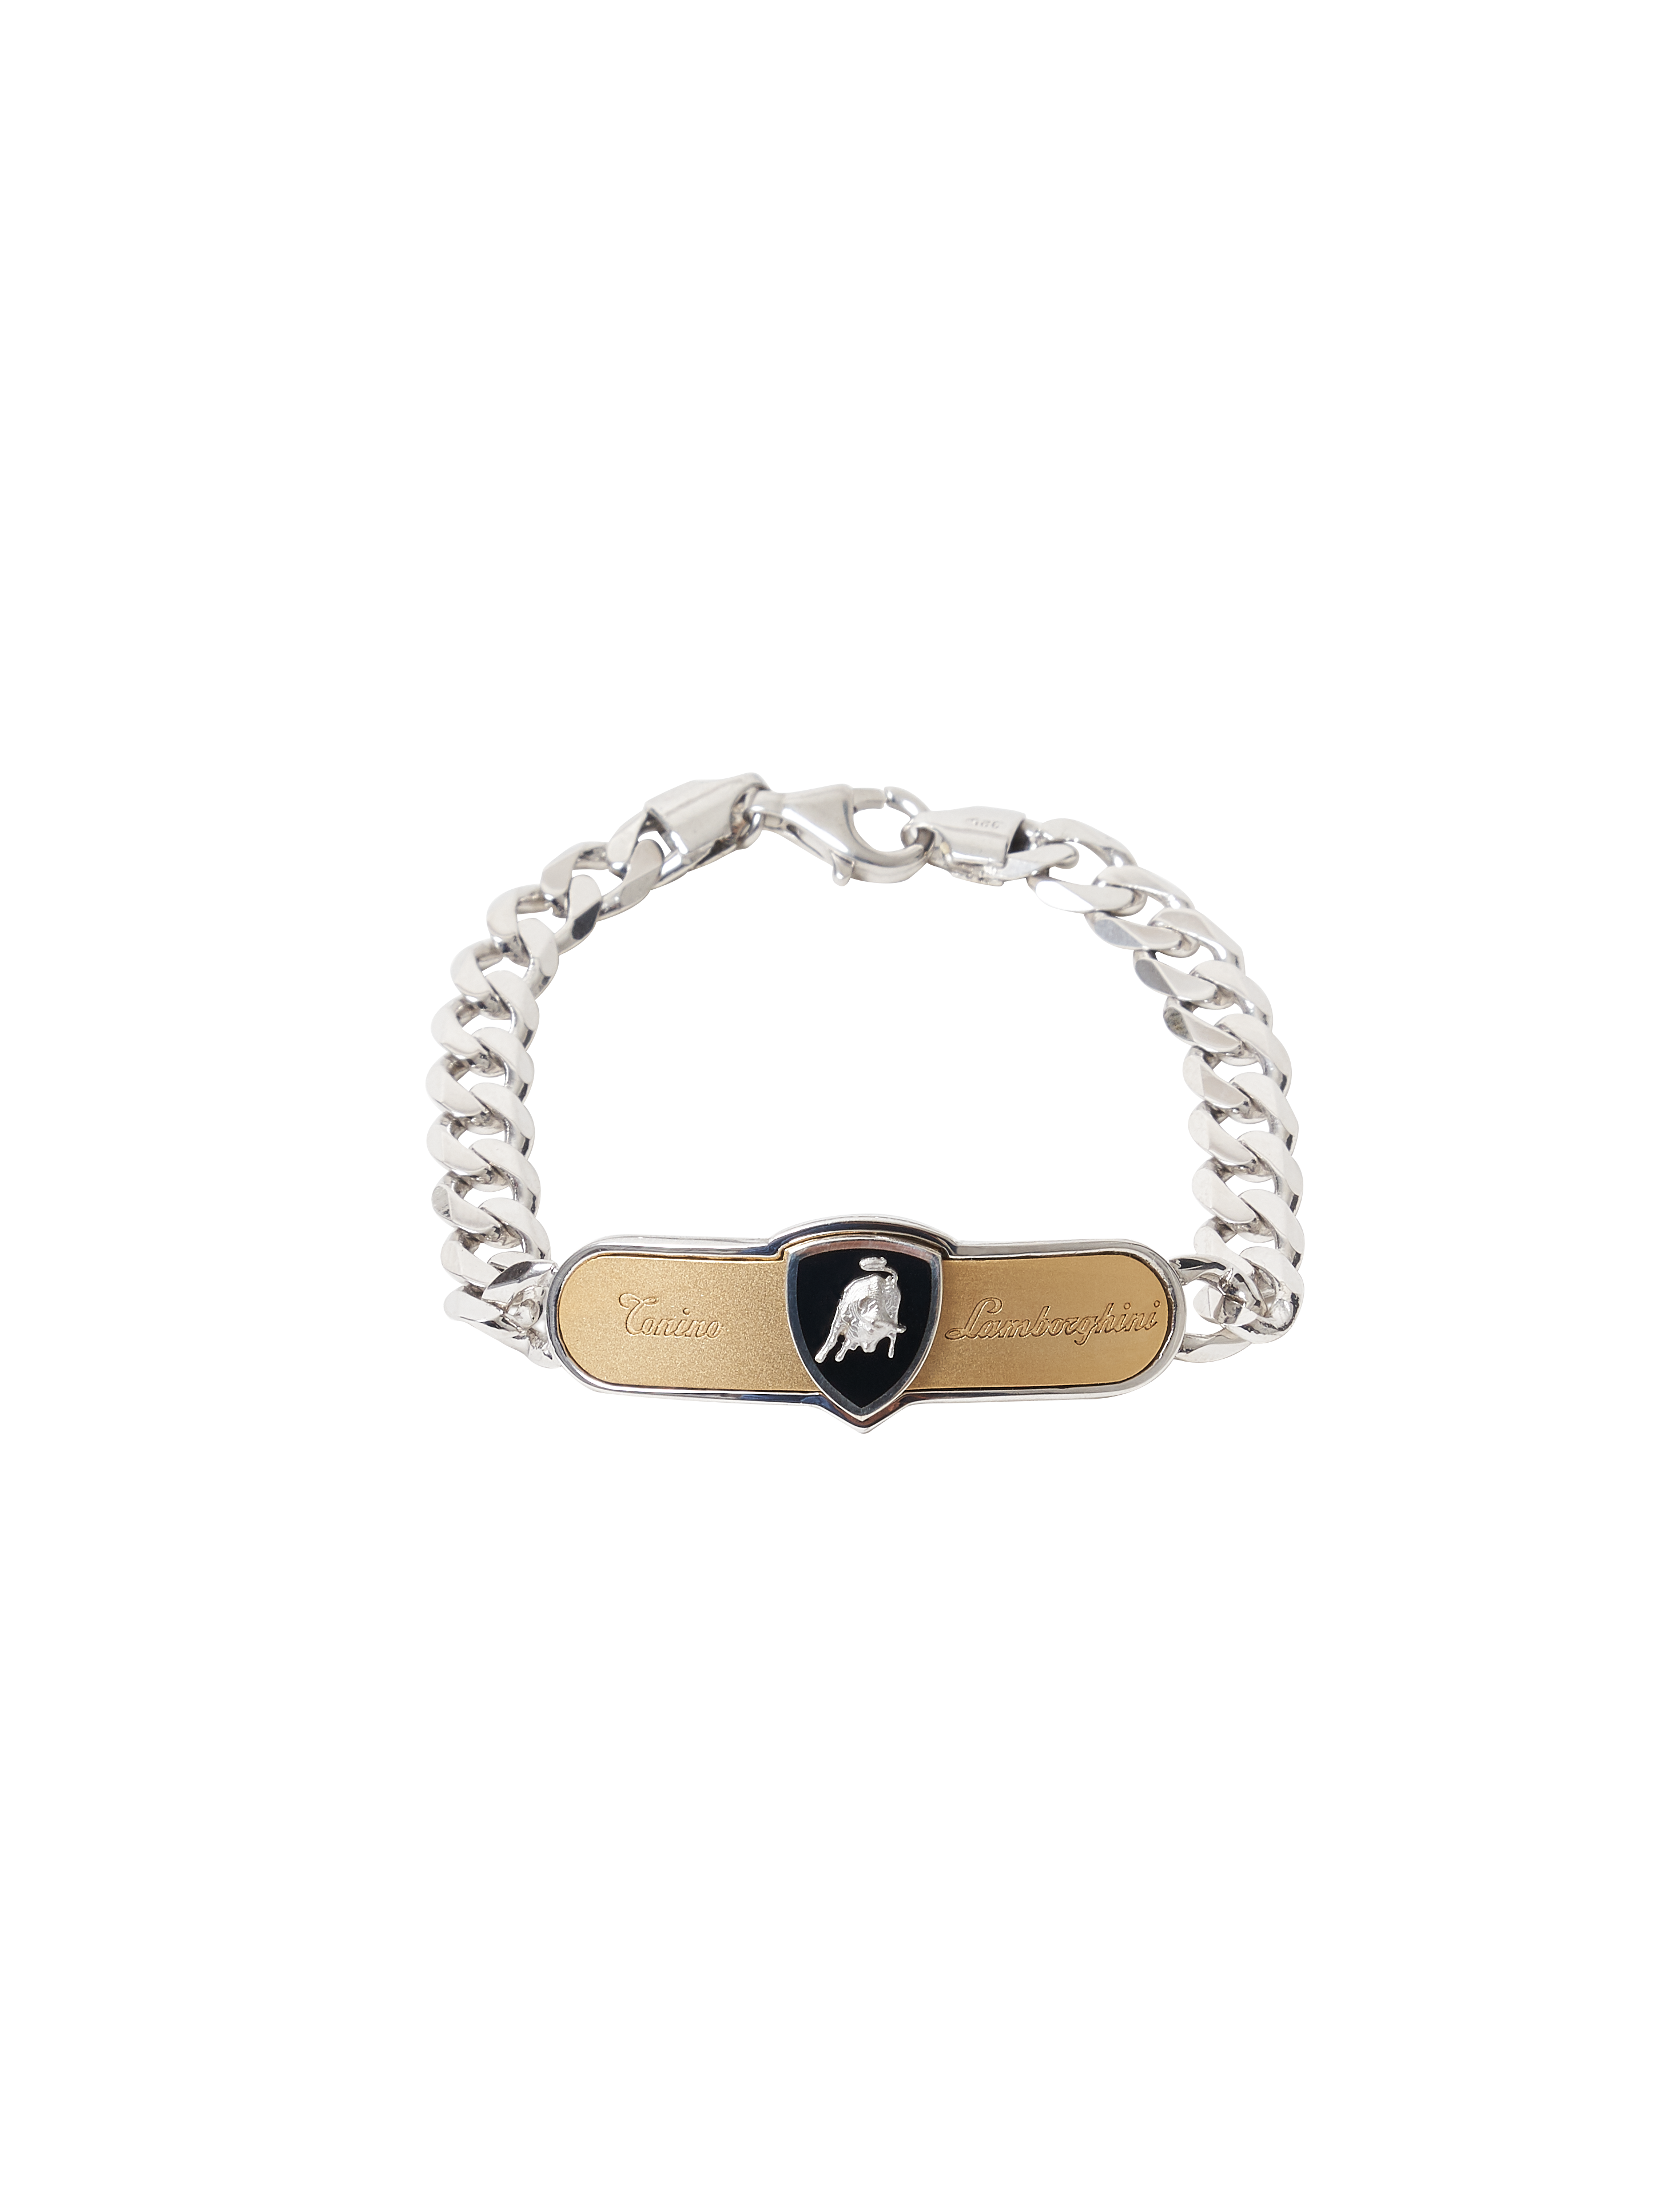 Curb Chain Bracelet - 19 cm